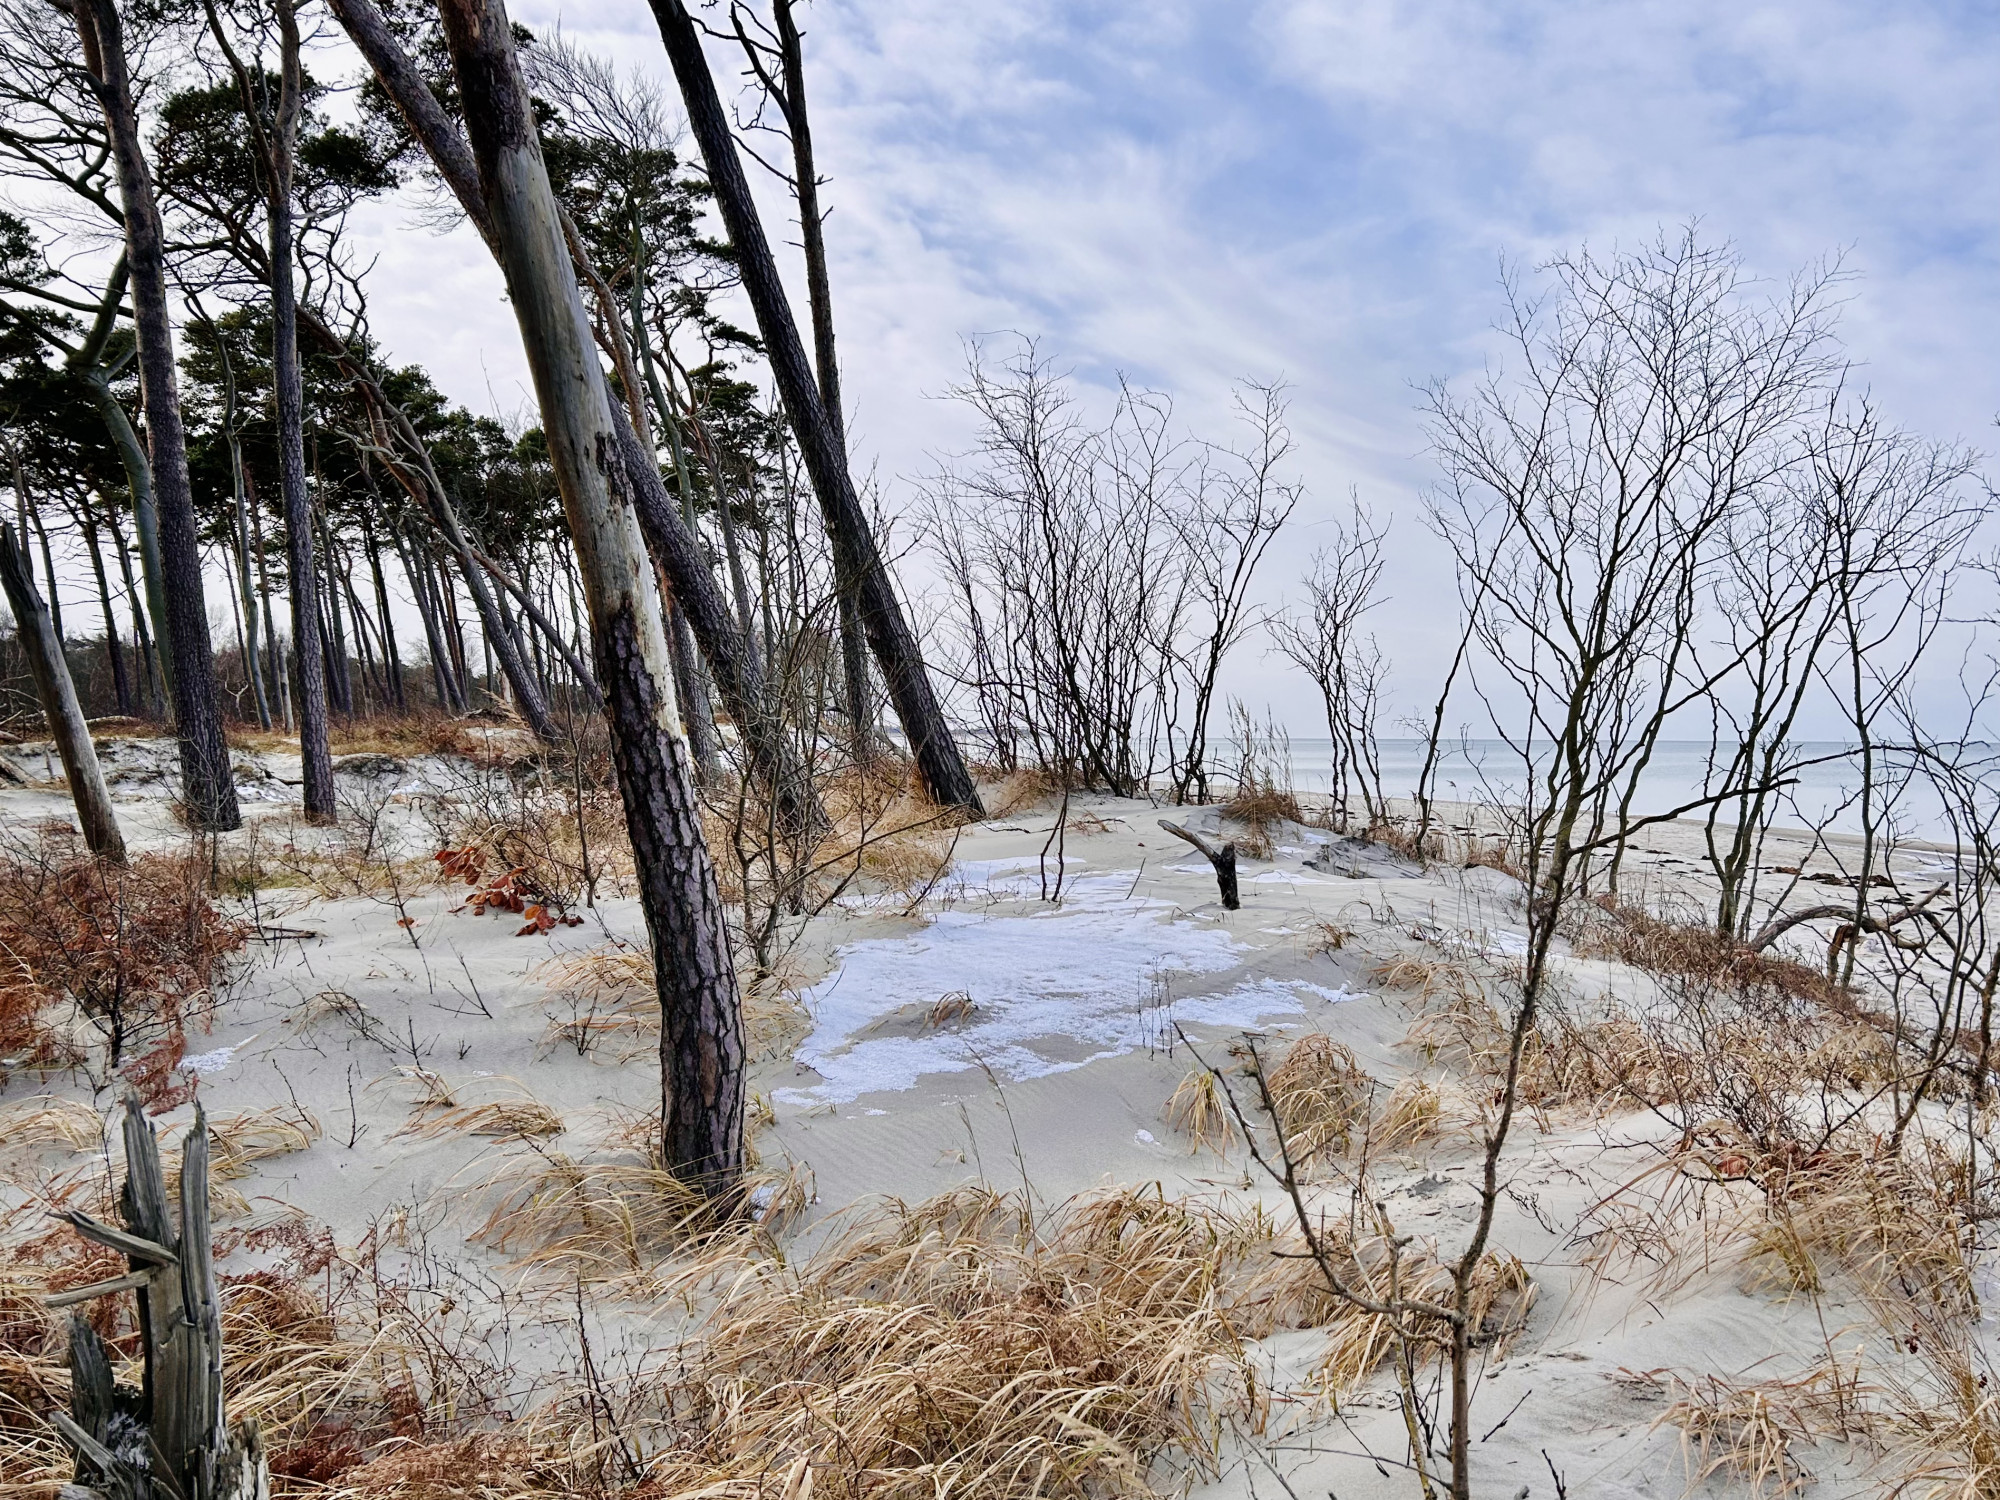 Im linken Teil des Bildes sind dünne Stämme von Windflüchtern im Sand zu sehen. Ringsum Strandhafer und etwas Schnee. Rechts kann man das Meer und den Strand erahnen. Am blauen Himmel sind viele weiße Wolken.